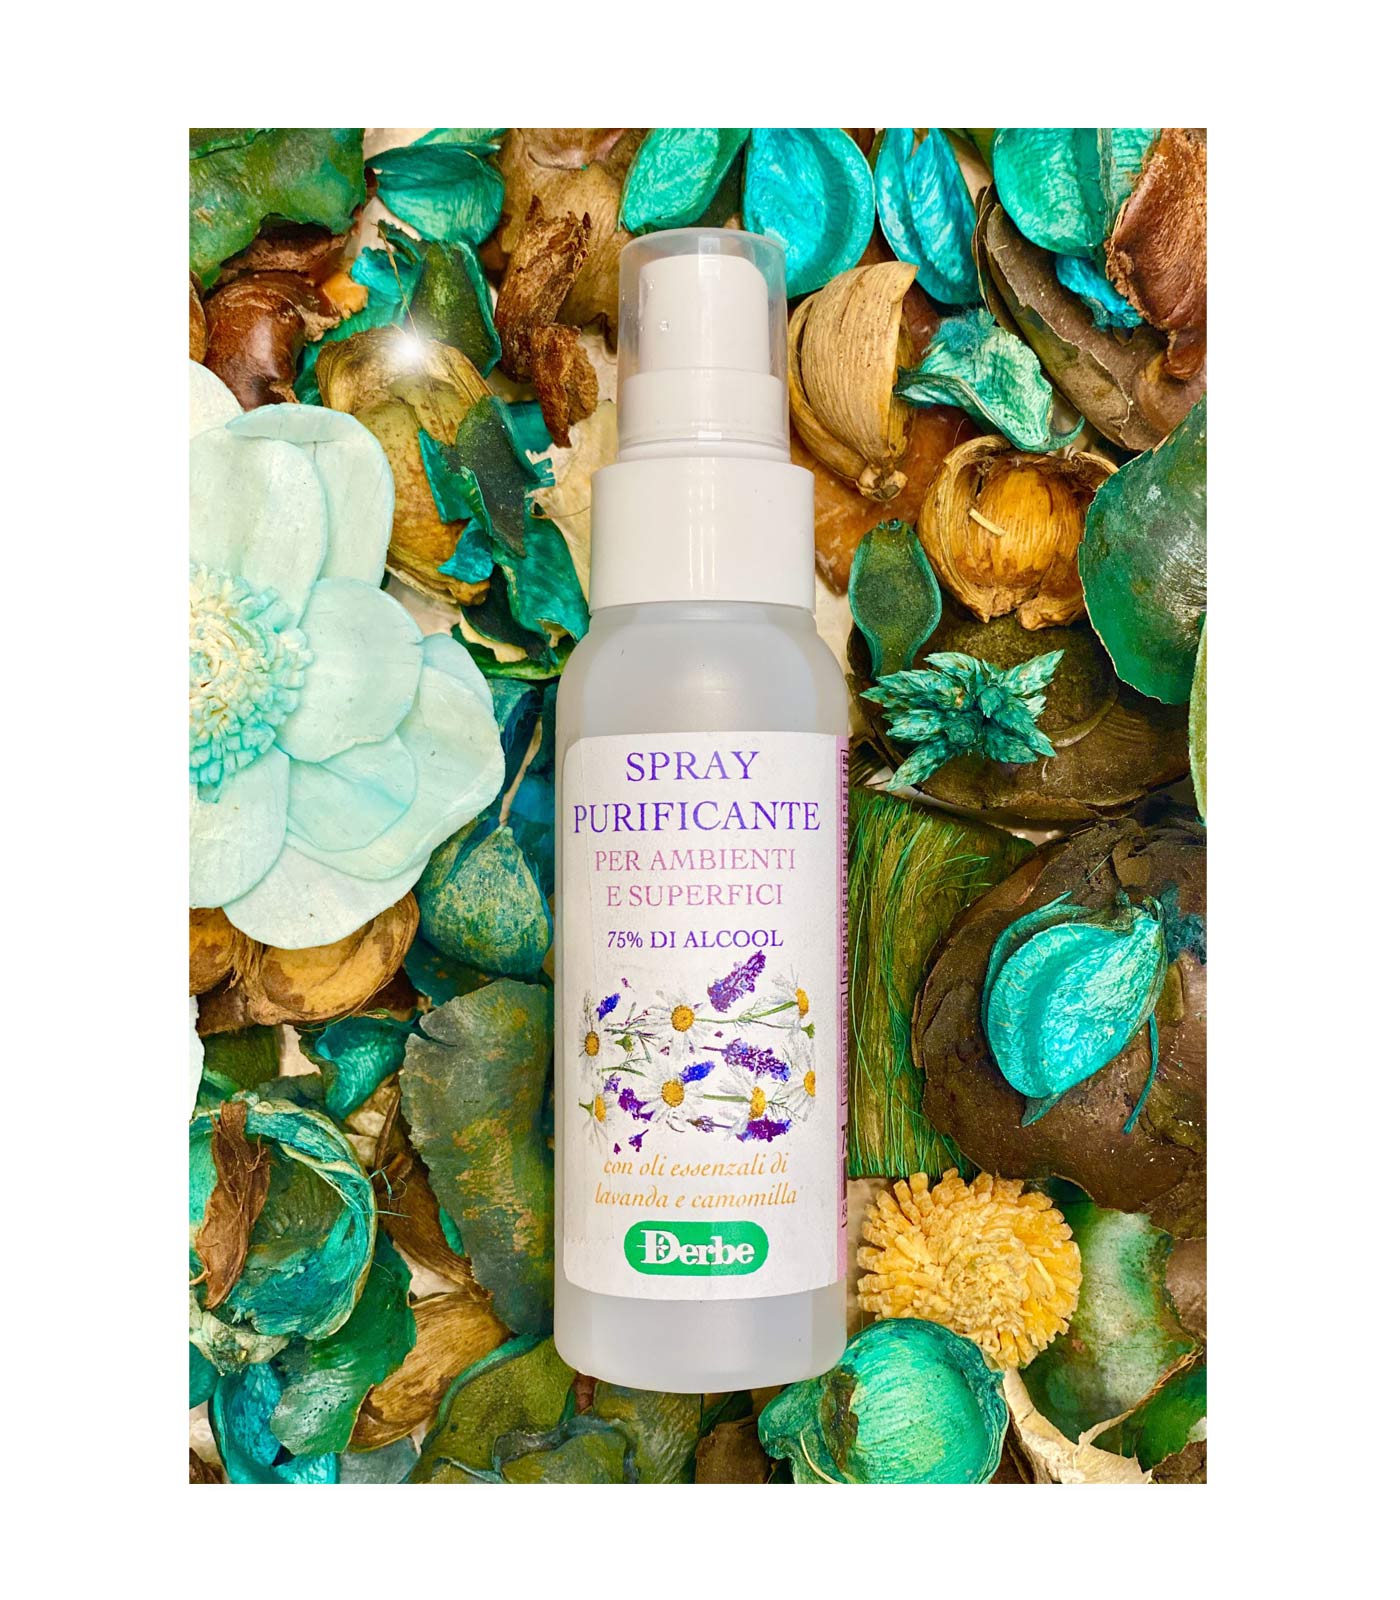 Spray purificante ambienti – Derbe